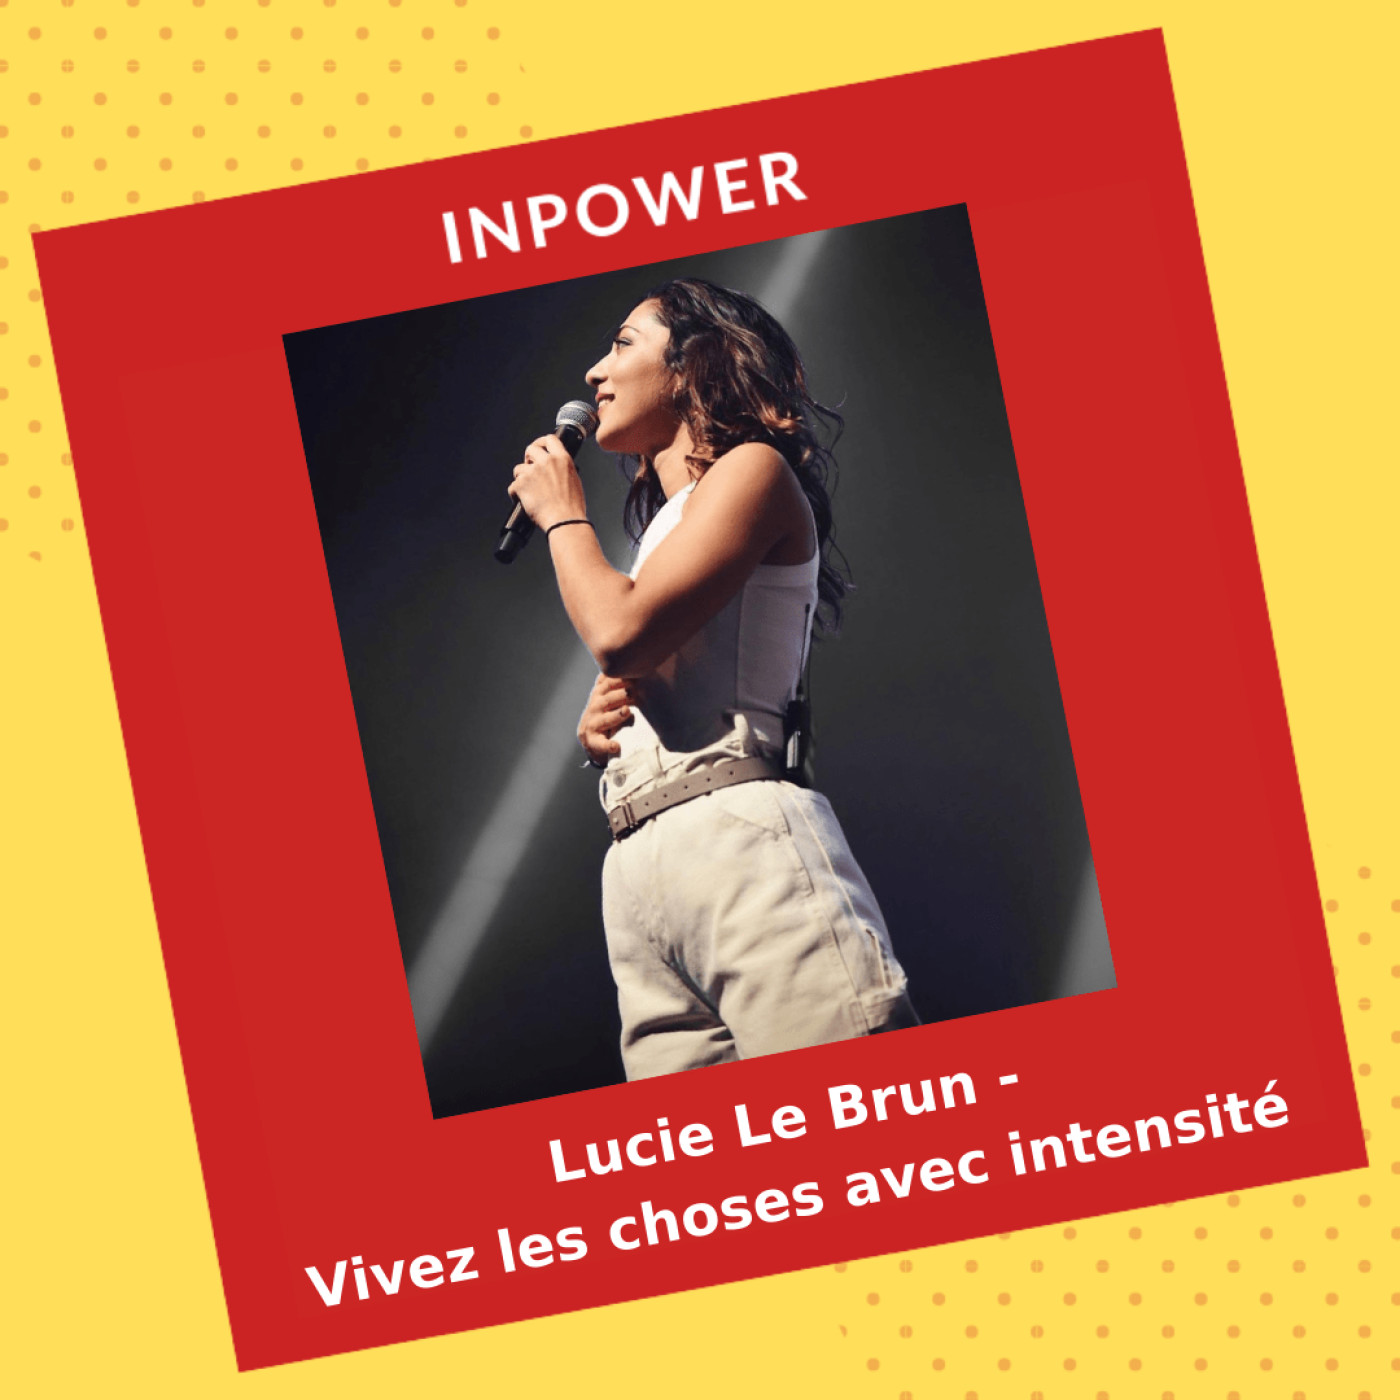 Lucie Le Brun, chanteuse - Vivez les choses avec intensité